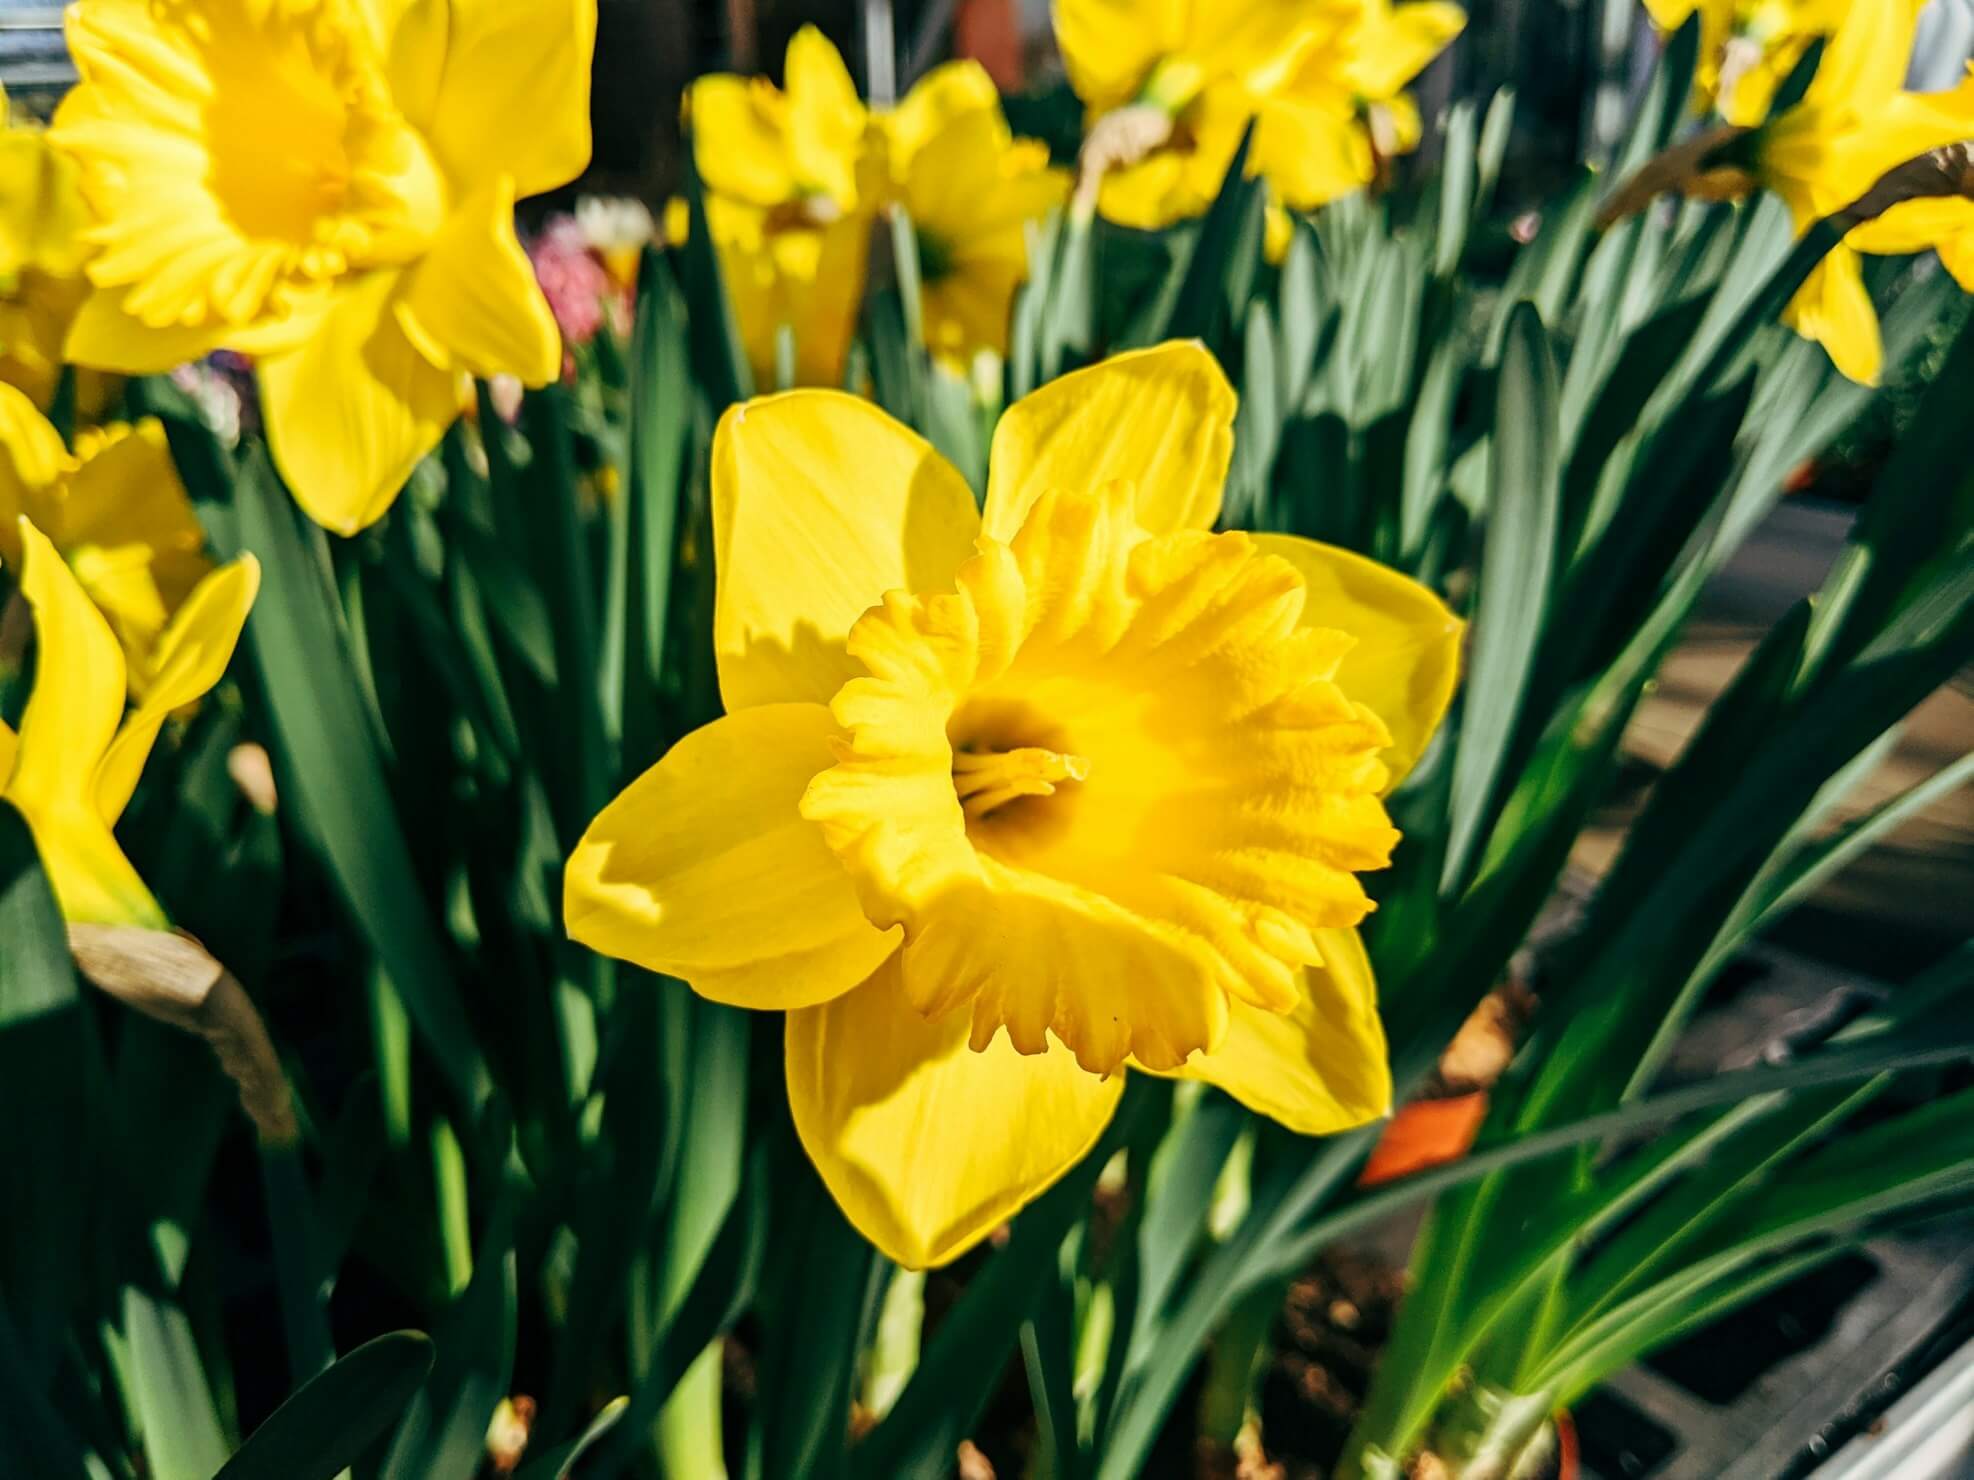 yellow daffodils in bloom